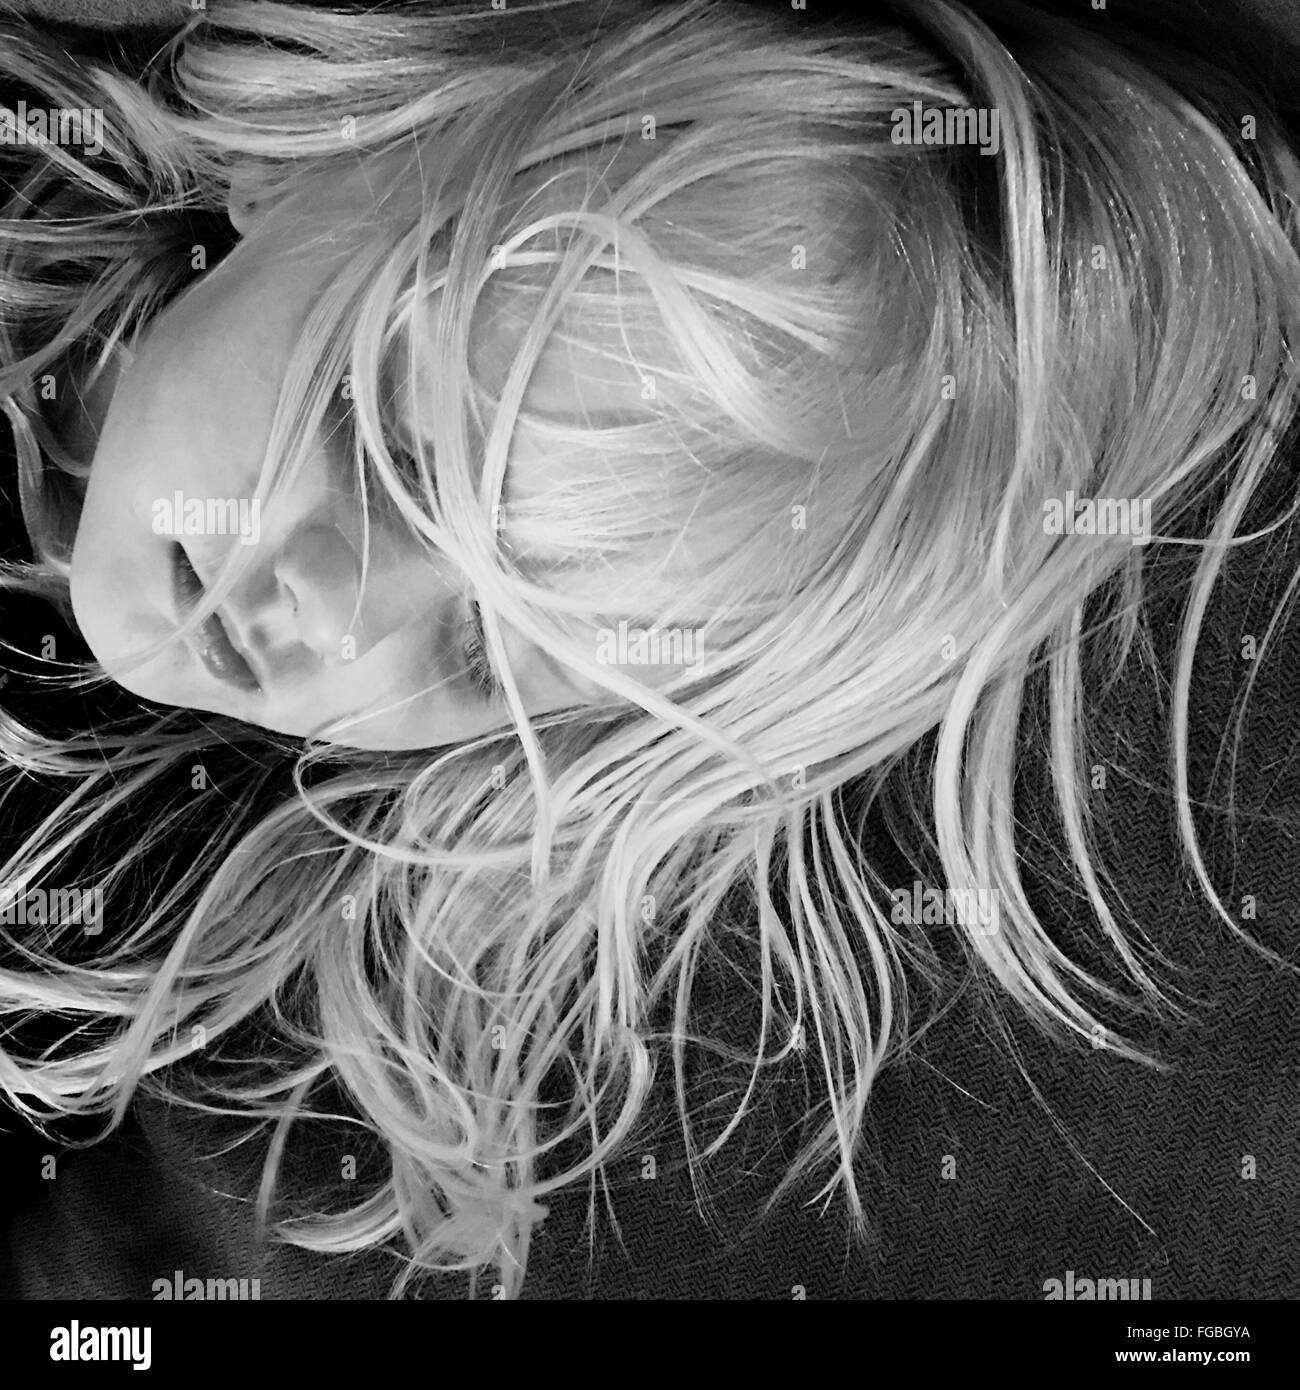 Portrait de jeune fille avec les cheveux en désordre sur le lit de couchage Banque D'Images